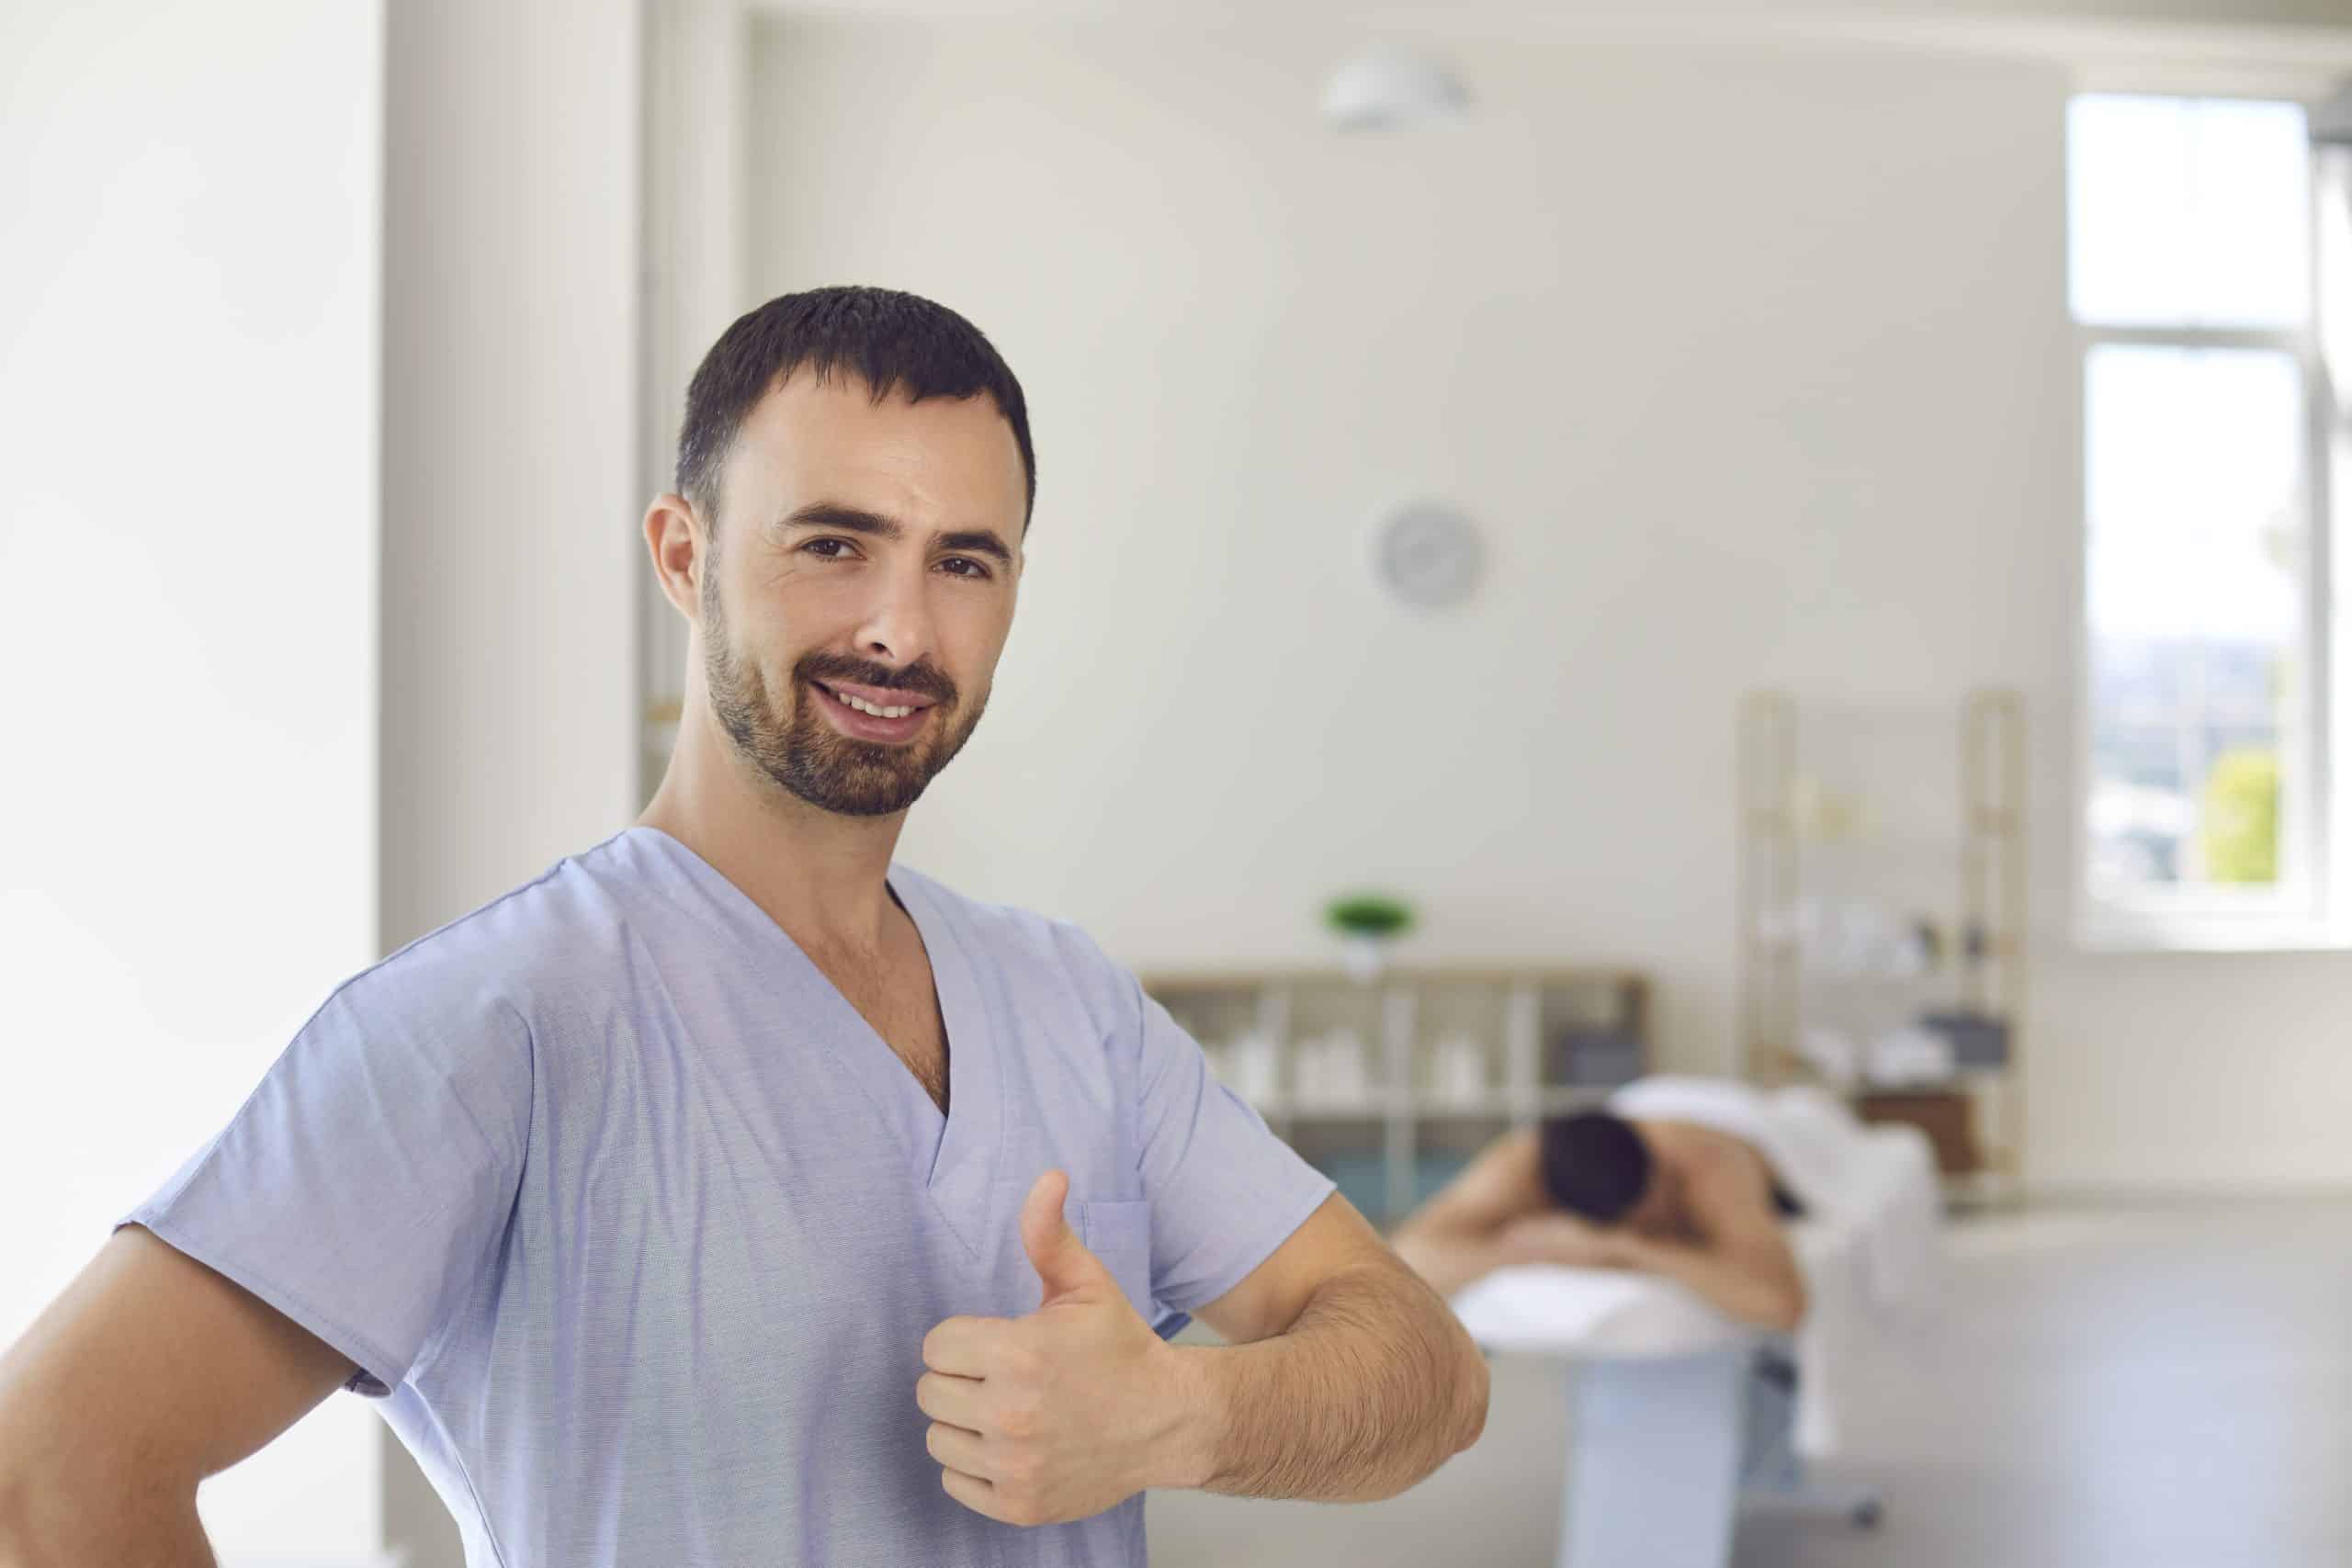 Smiling man doctor chiropractor